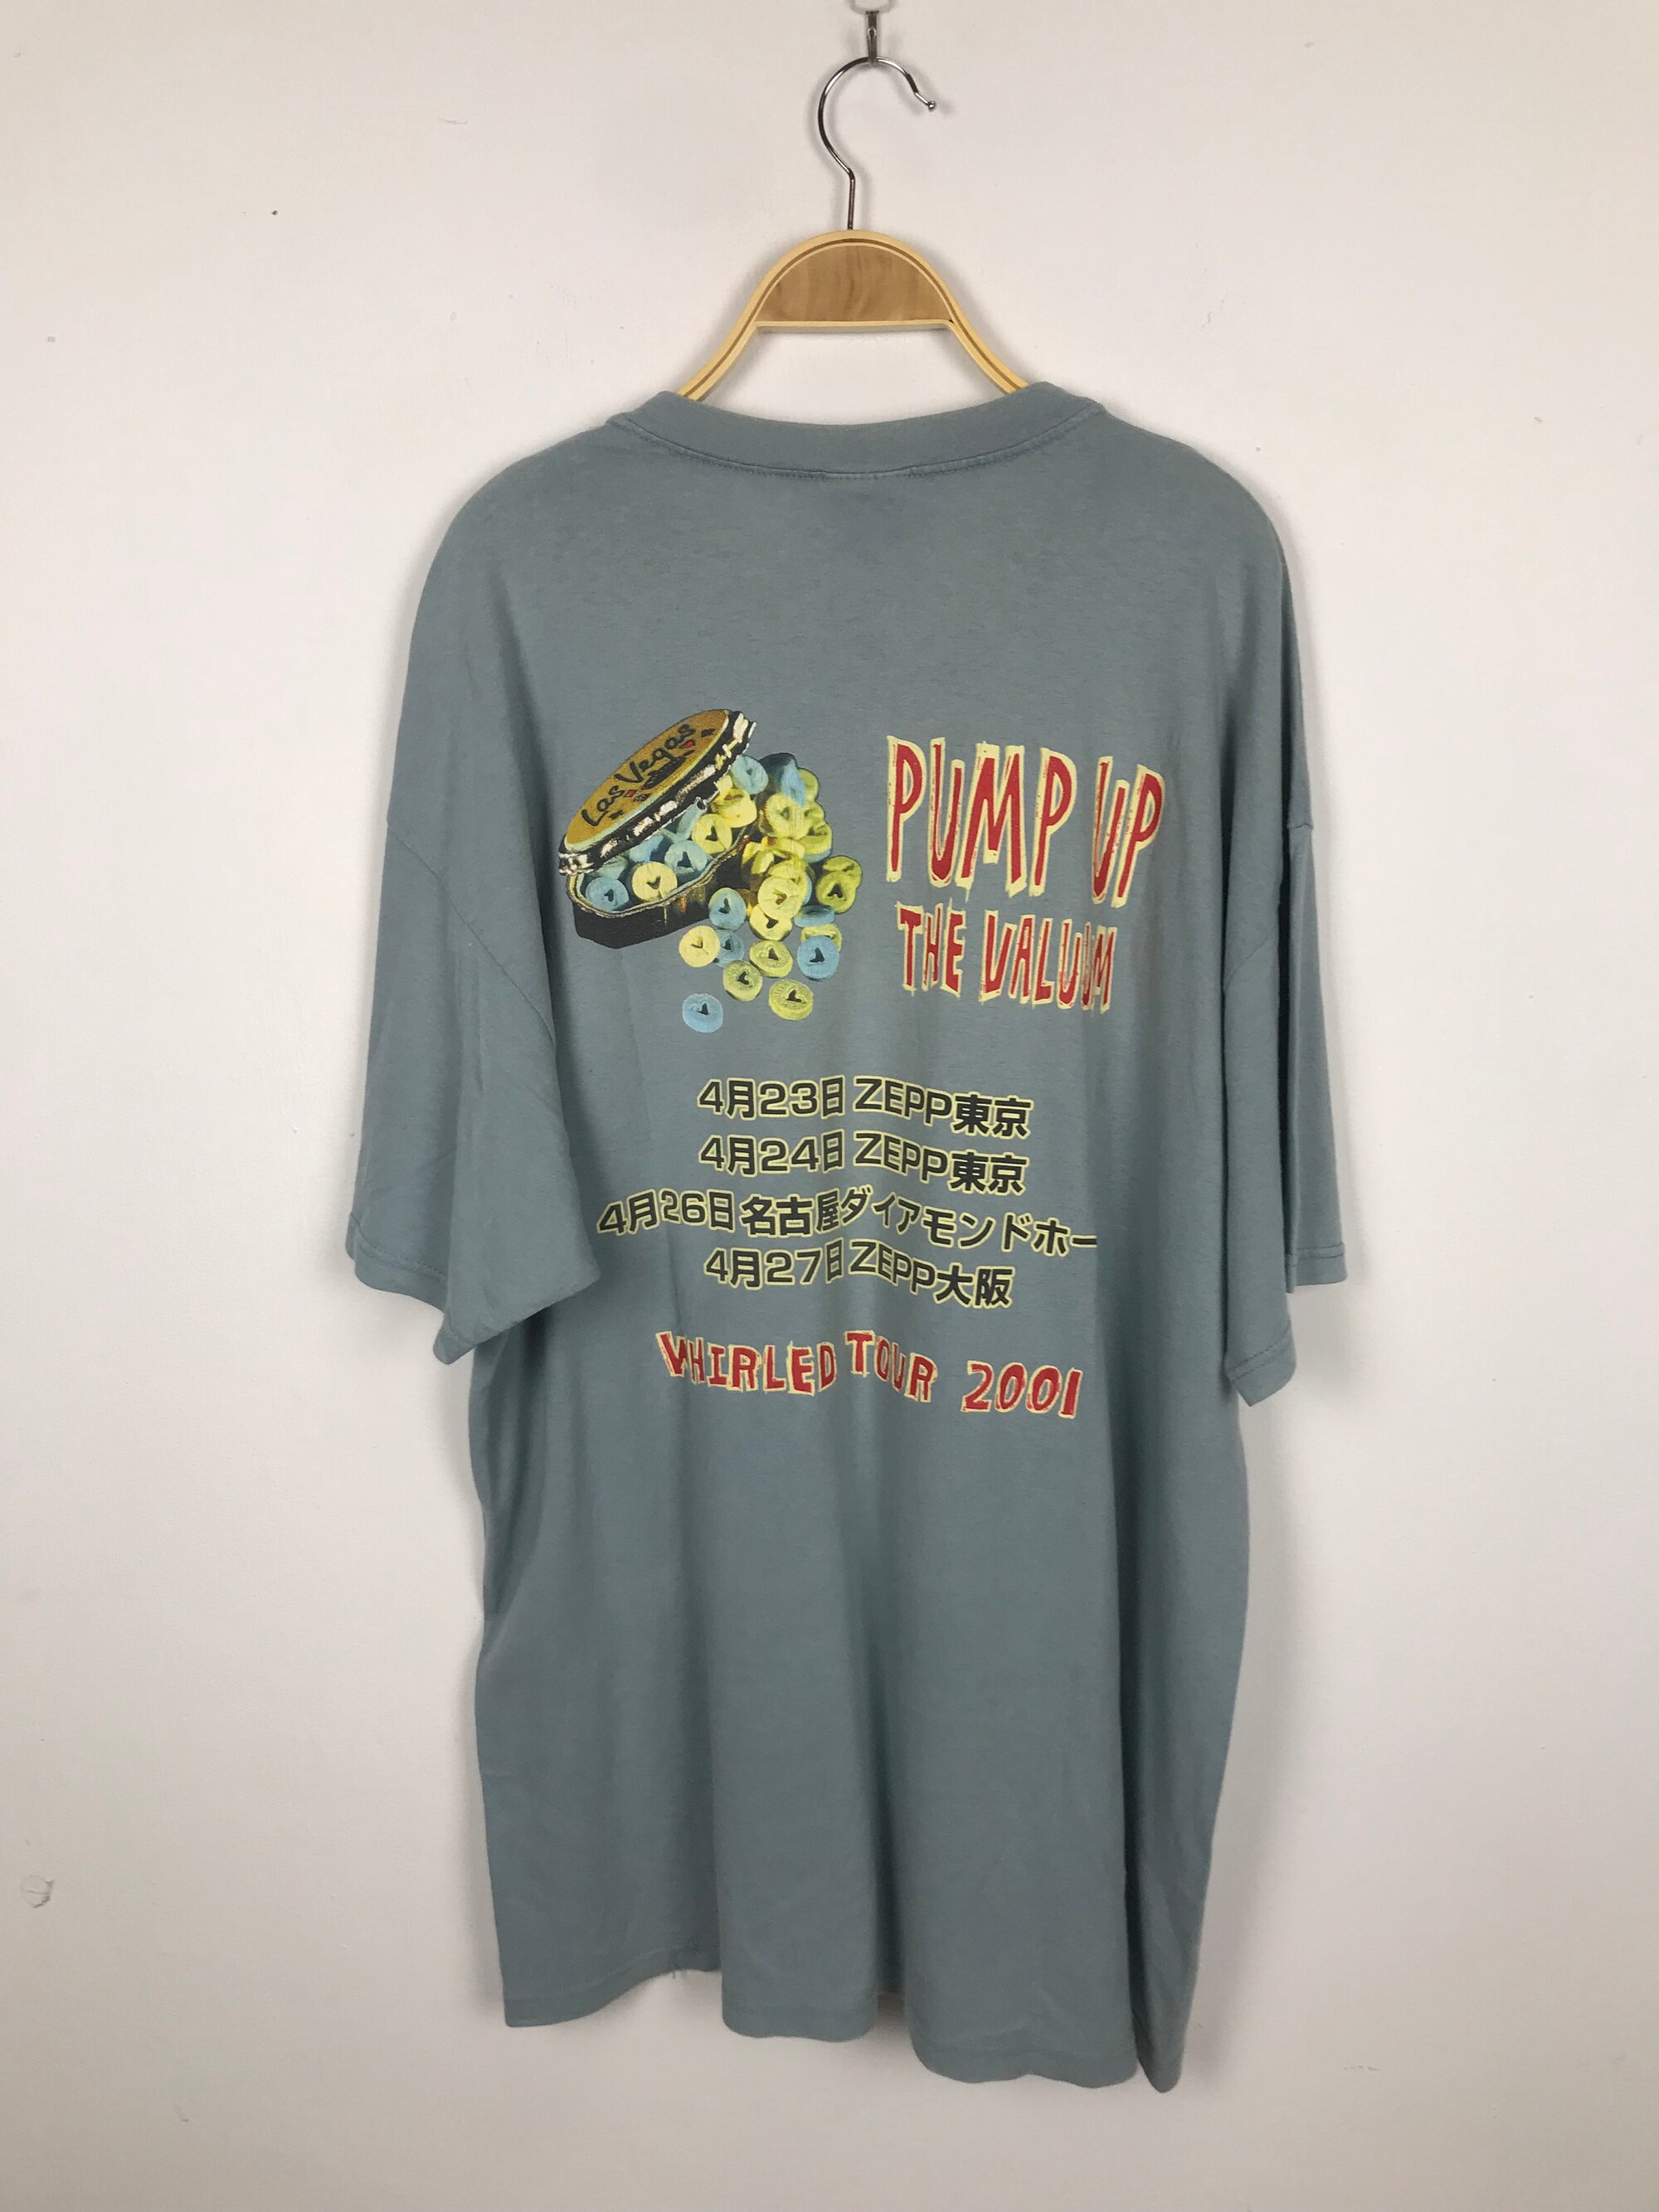 NOFX pump up shirt